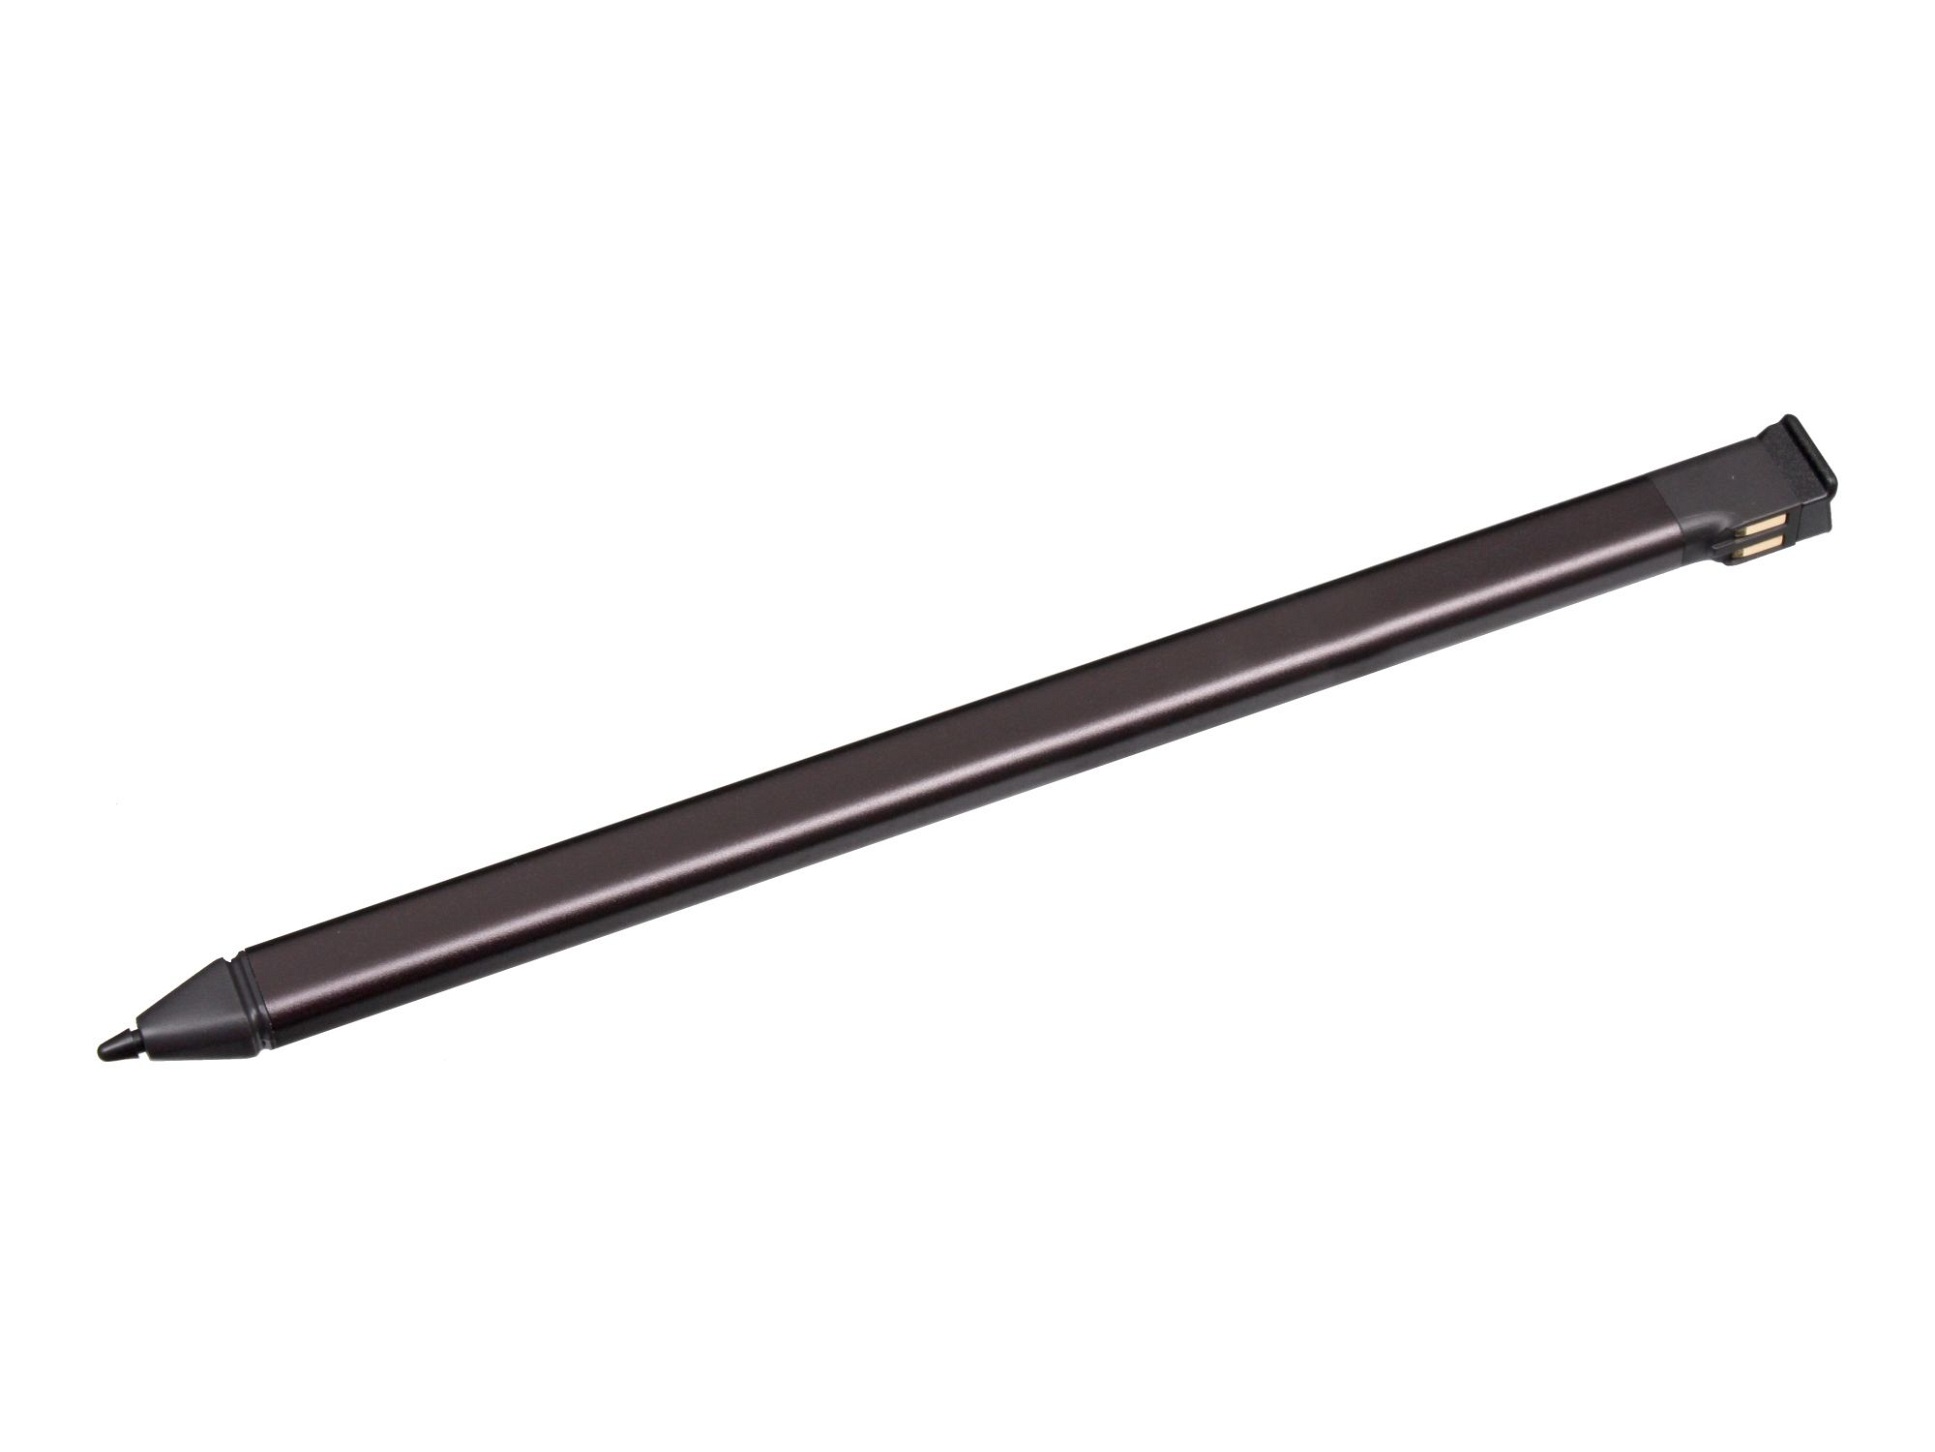 Asus 04190-002401 Stylus Pen SA301H